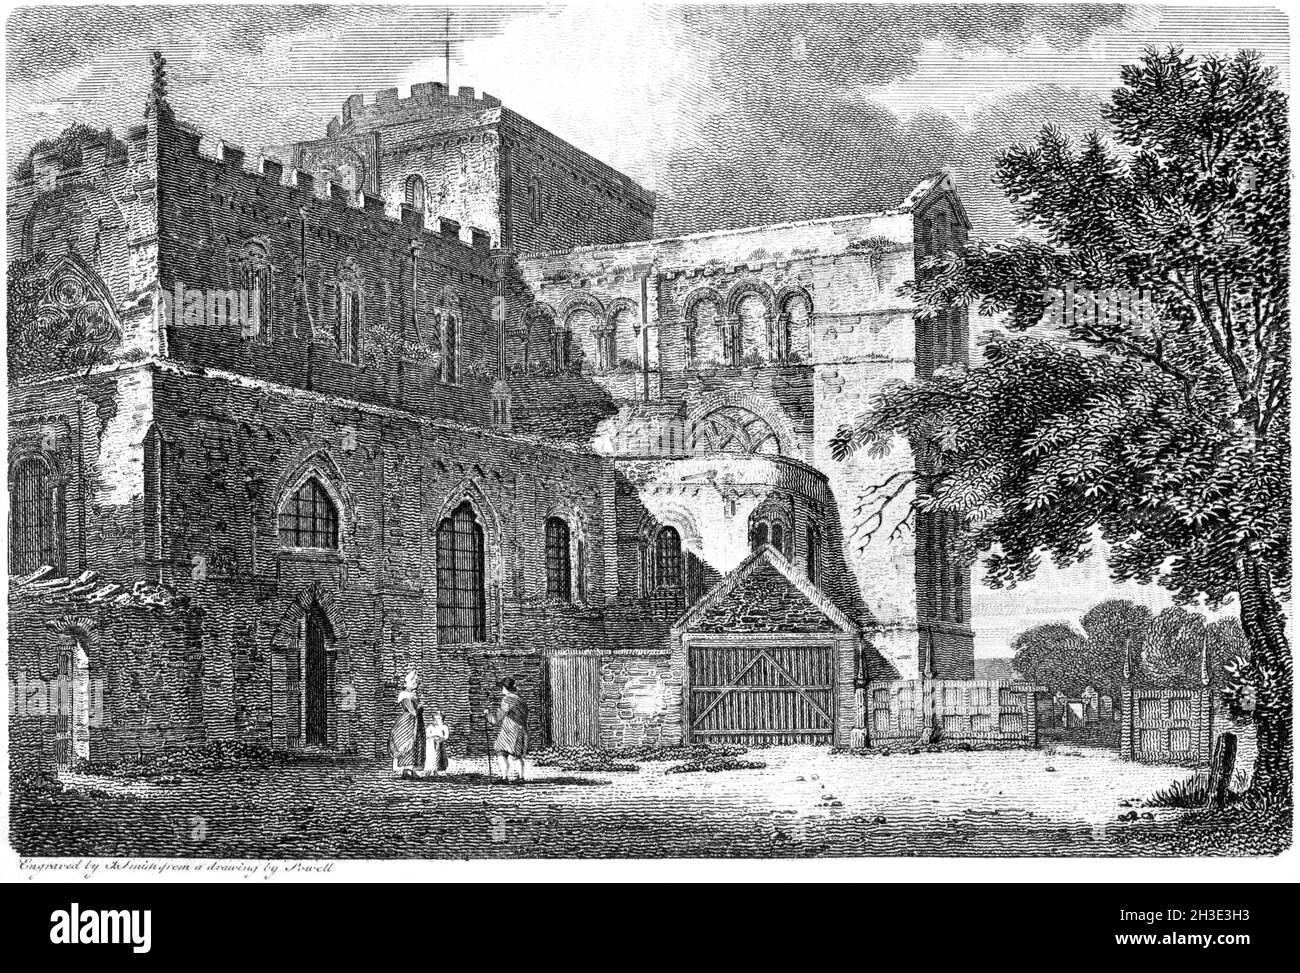 Ein Stich der Rumsey Church (Romsey Abbey), Hampshire UK, gescannt in hoher Auflösung aus einem Buch aus dem Jahr 1812. Für urheberrechtlich frei gehalten. Stockfoto